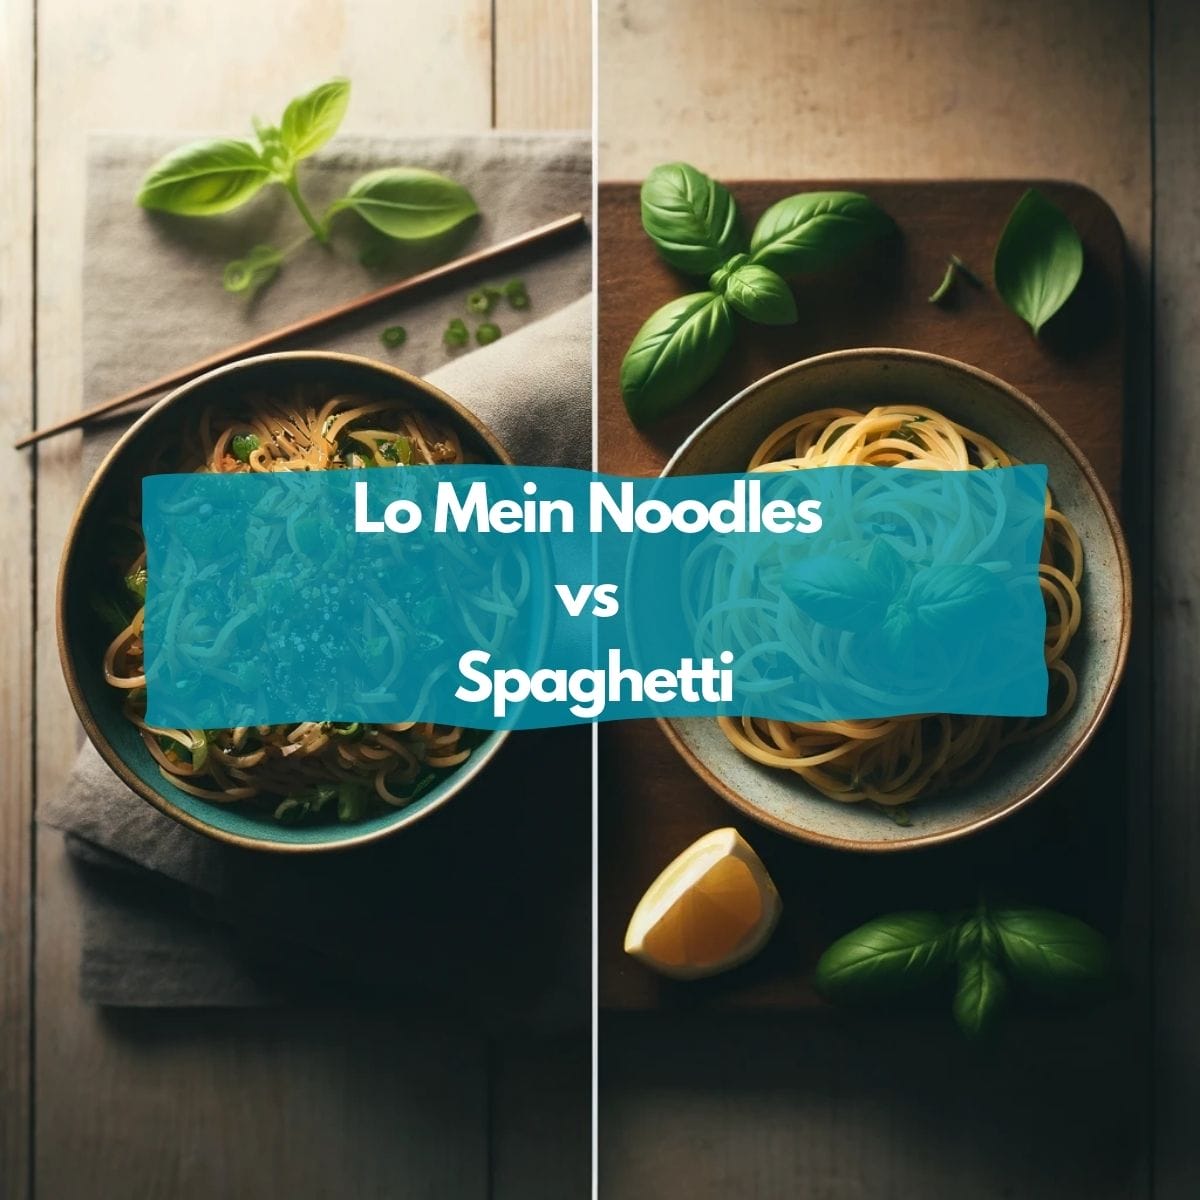 Lo mein noodles vs spaghetti